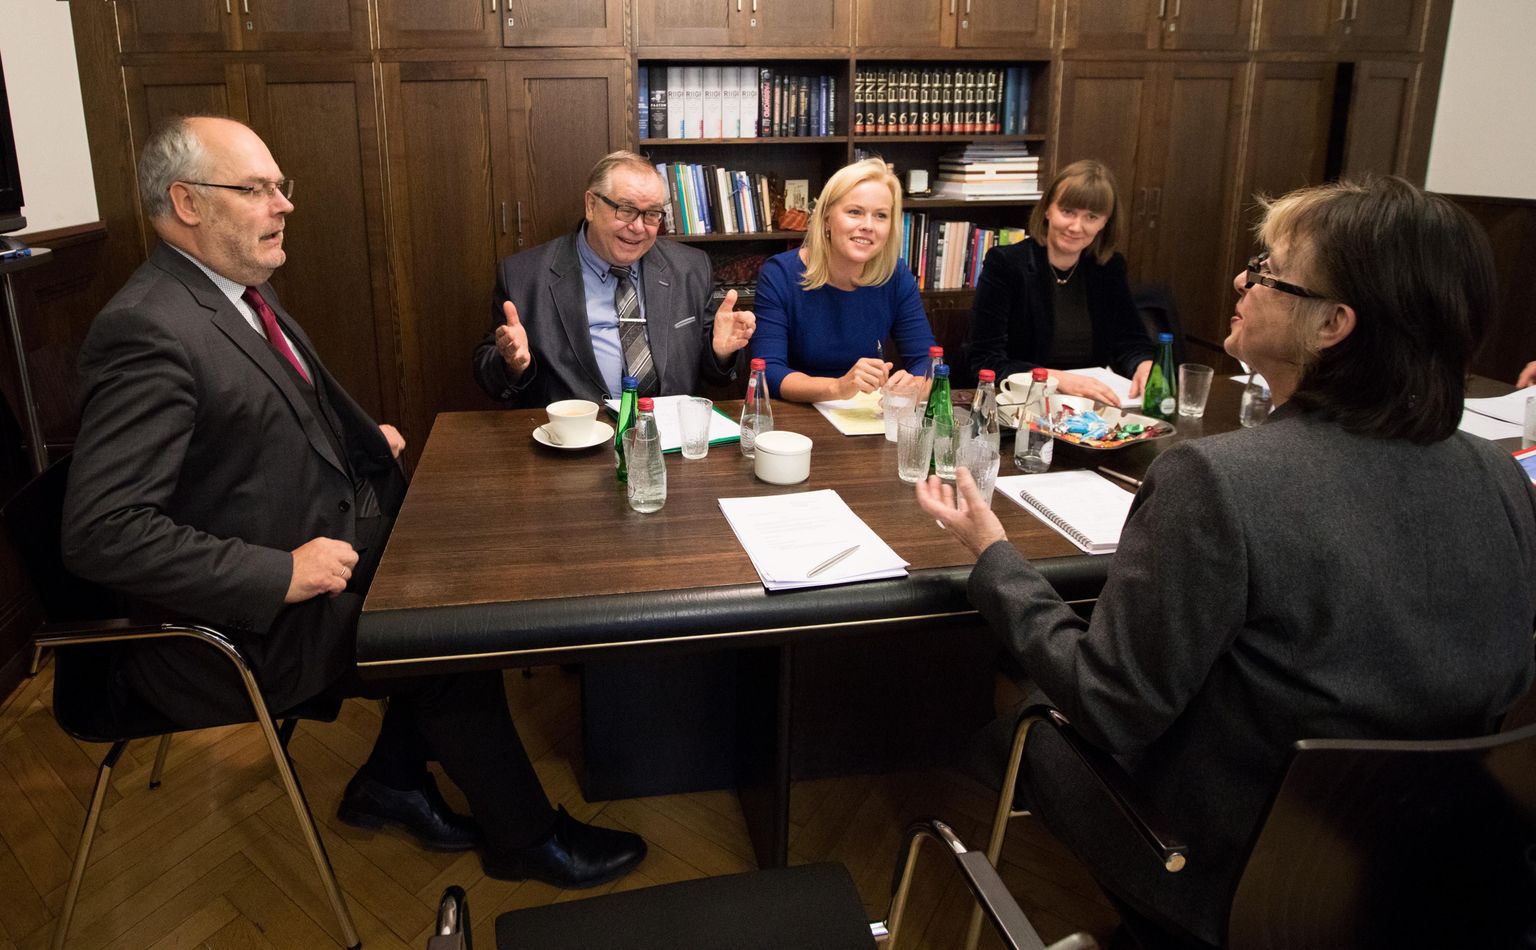 ERMi uueks juhiks valitud Alar Karis (vasakul) eile kultuuriministeeriumi valimiskomisjoni vestlusel. Pildil komisjoni liikmed Aadu Must, Merju Künnapu, Mirjam Rääbis ja Sirje Helme (seljaga).